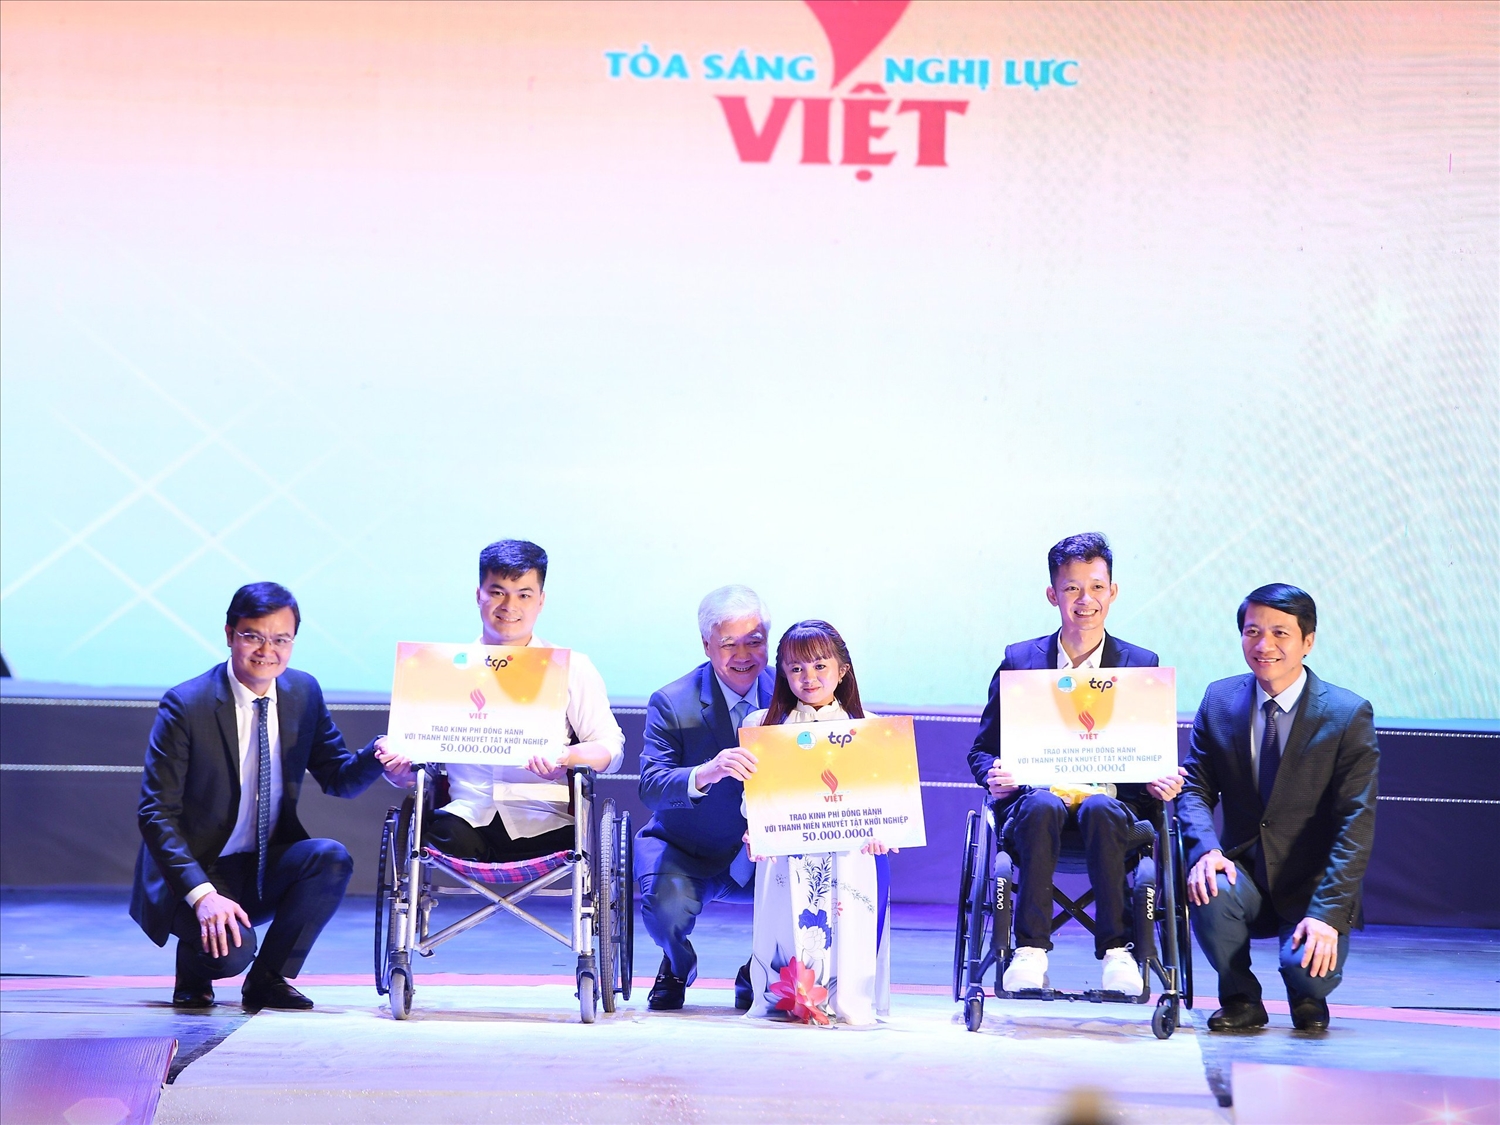 Các tấm gương thanh niên khuyết tật được tuyên dương tại Chương trình “Tỏa sáng Nghị lực Việt” năm 2023